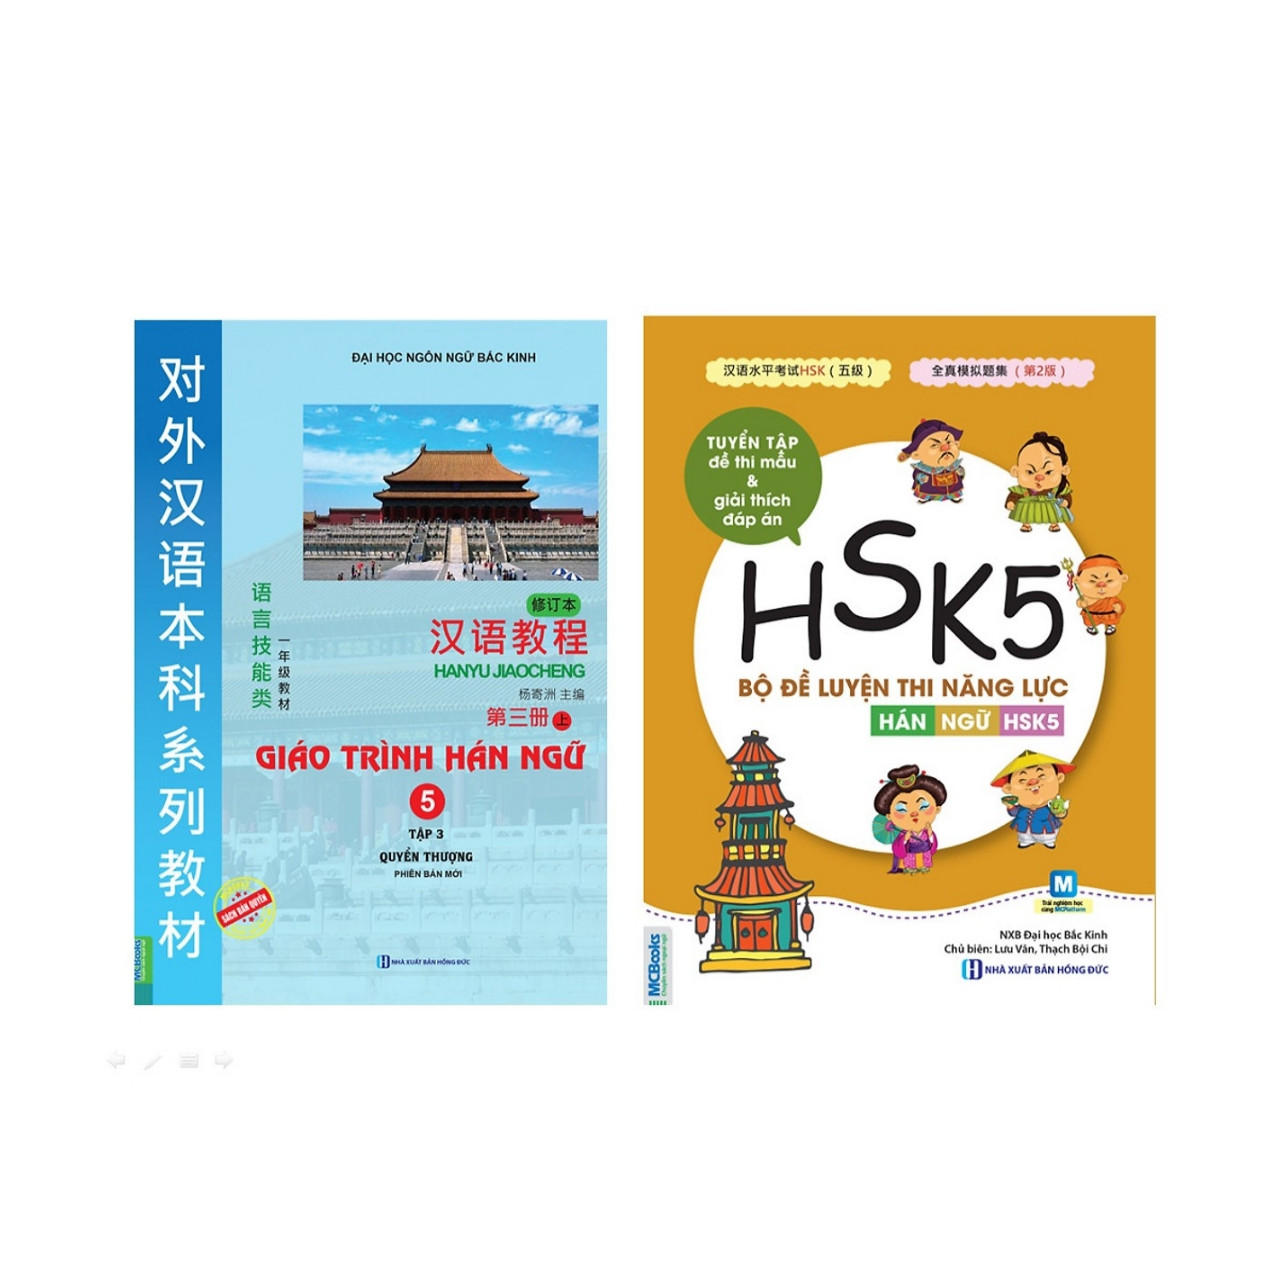 Combo 3 cuốn ;Giáo trình hán ngữ 5 + Bộ đề luyện thi năng lực hán ngữ HSK5 ( Tặng kèm giá đỡ iring cute )